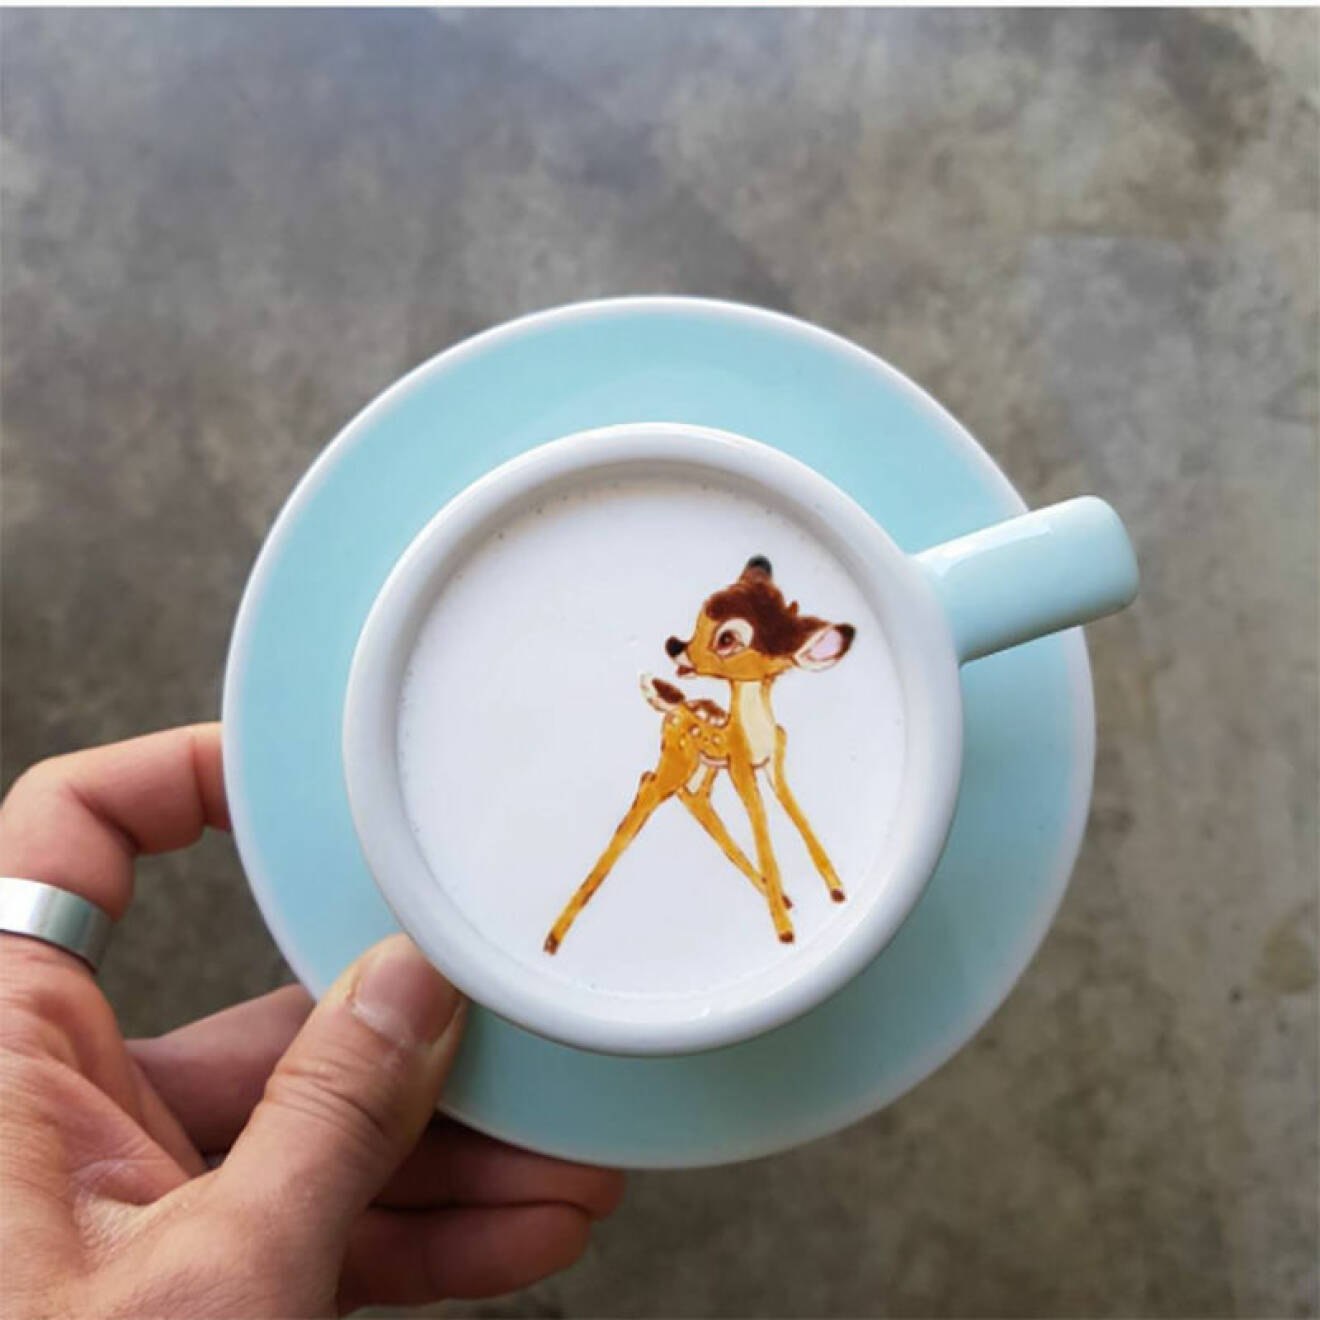 En kaffe med Bambi, tack!